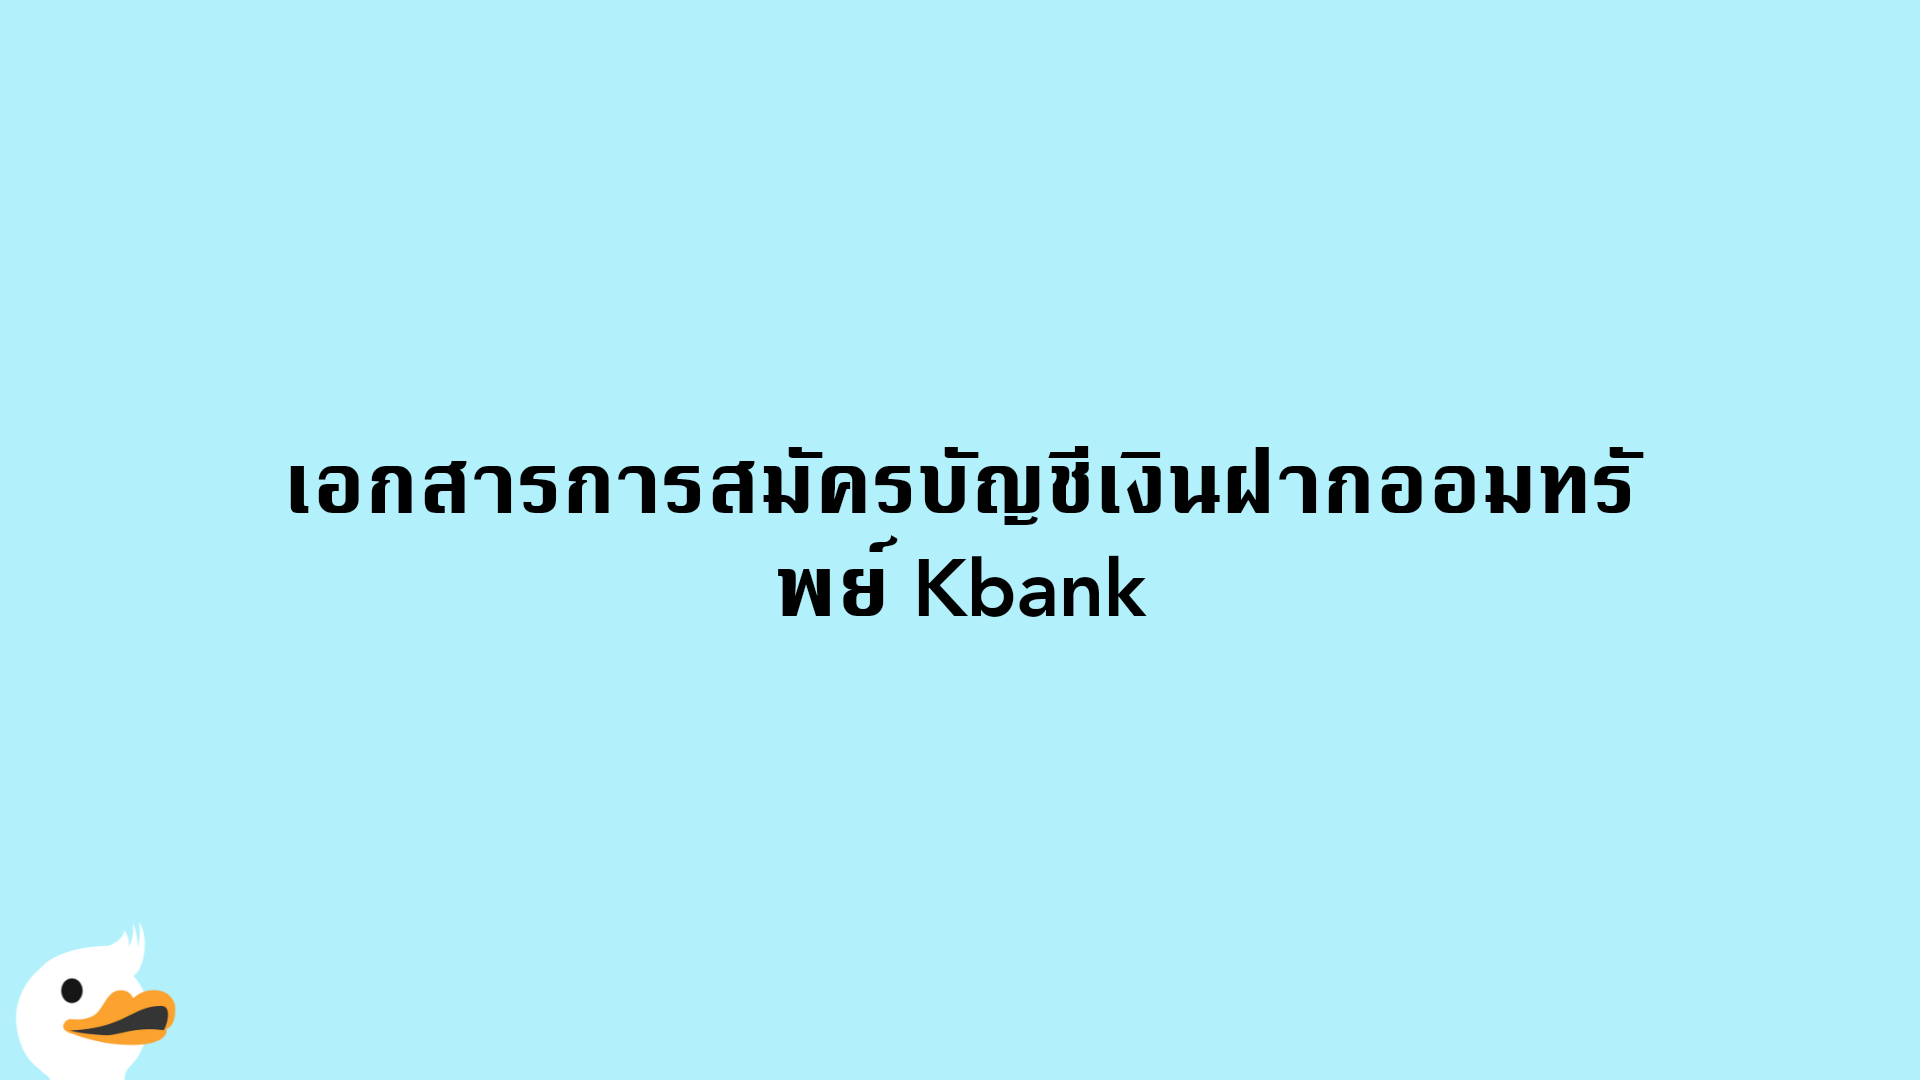 เอกสารการสมัครบัญชีเงินฝากออมทรัพย์ Kbank